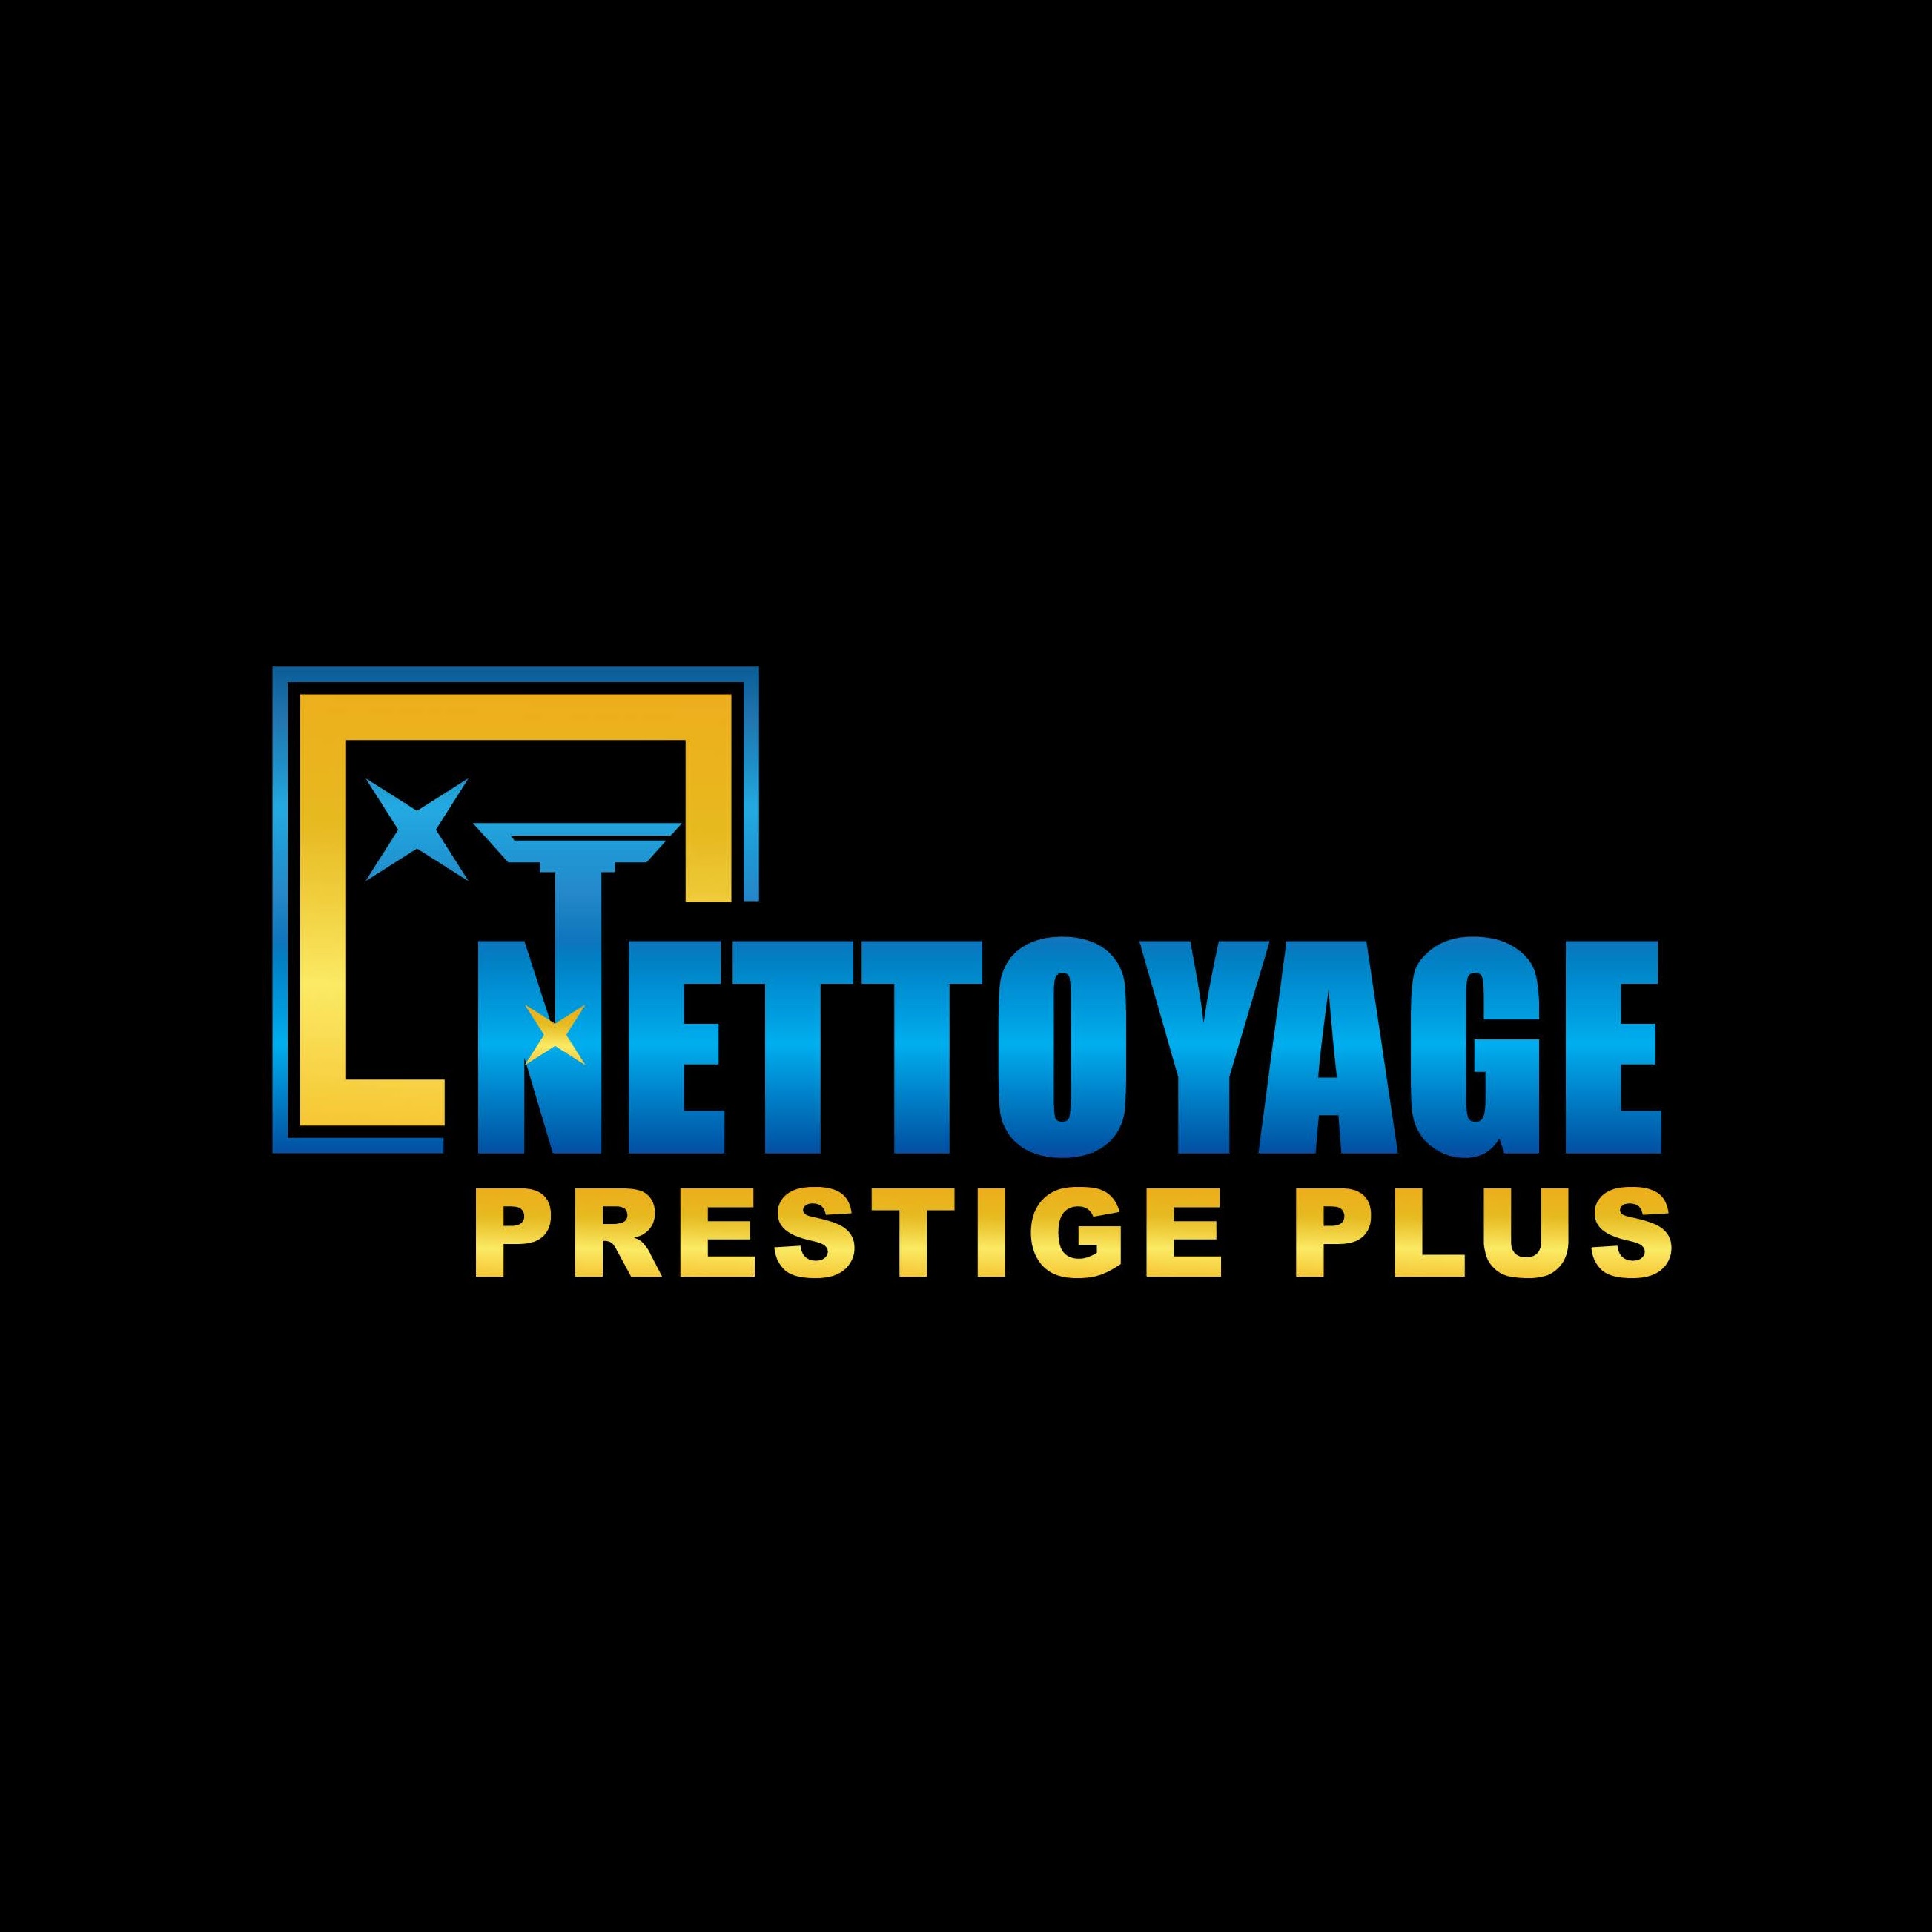 Nettoyage Prestige Plus